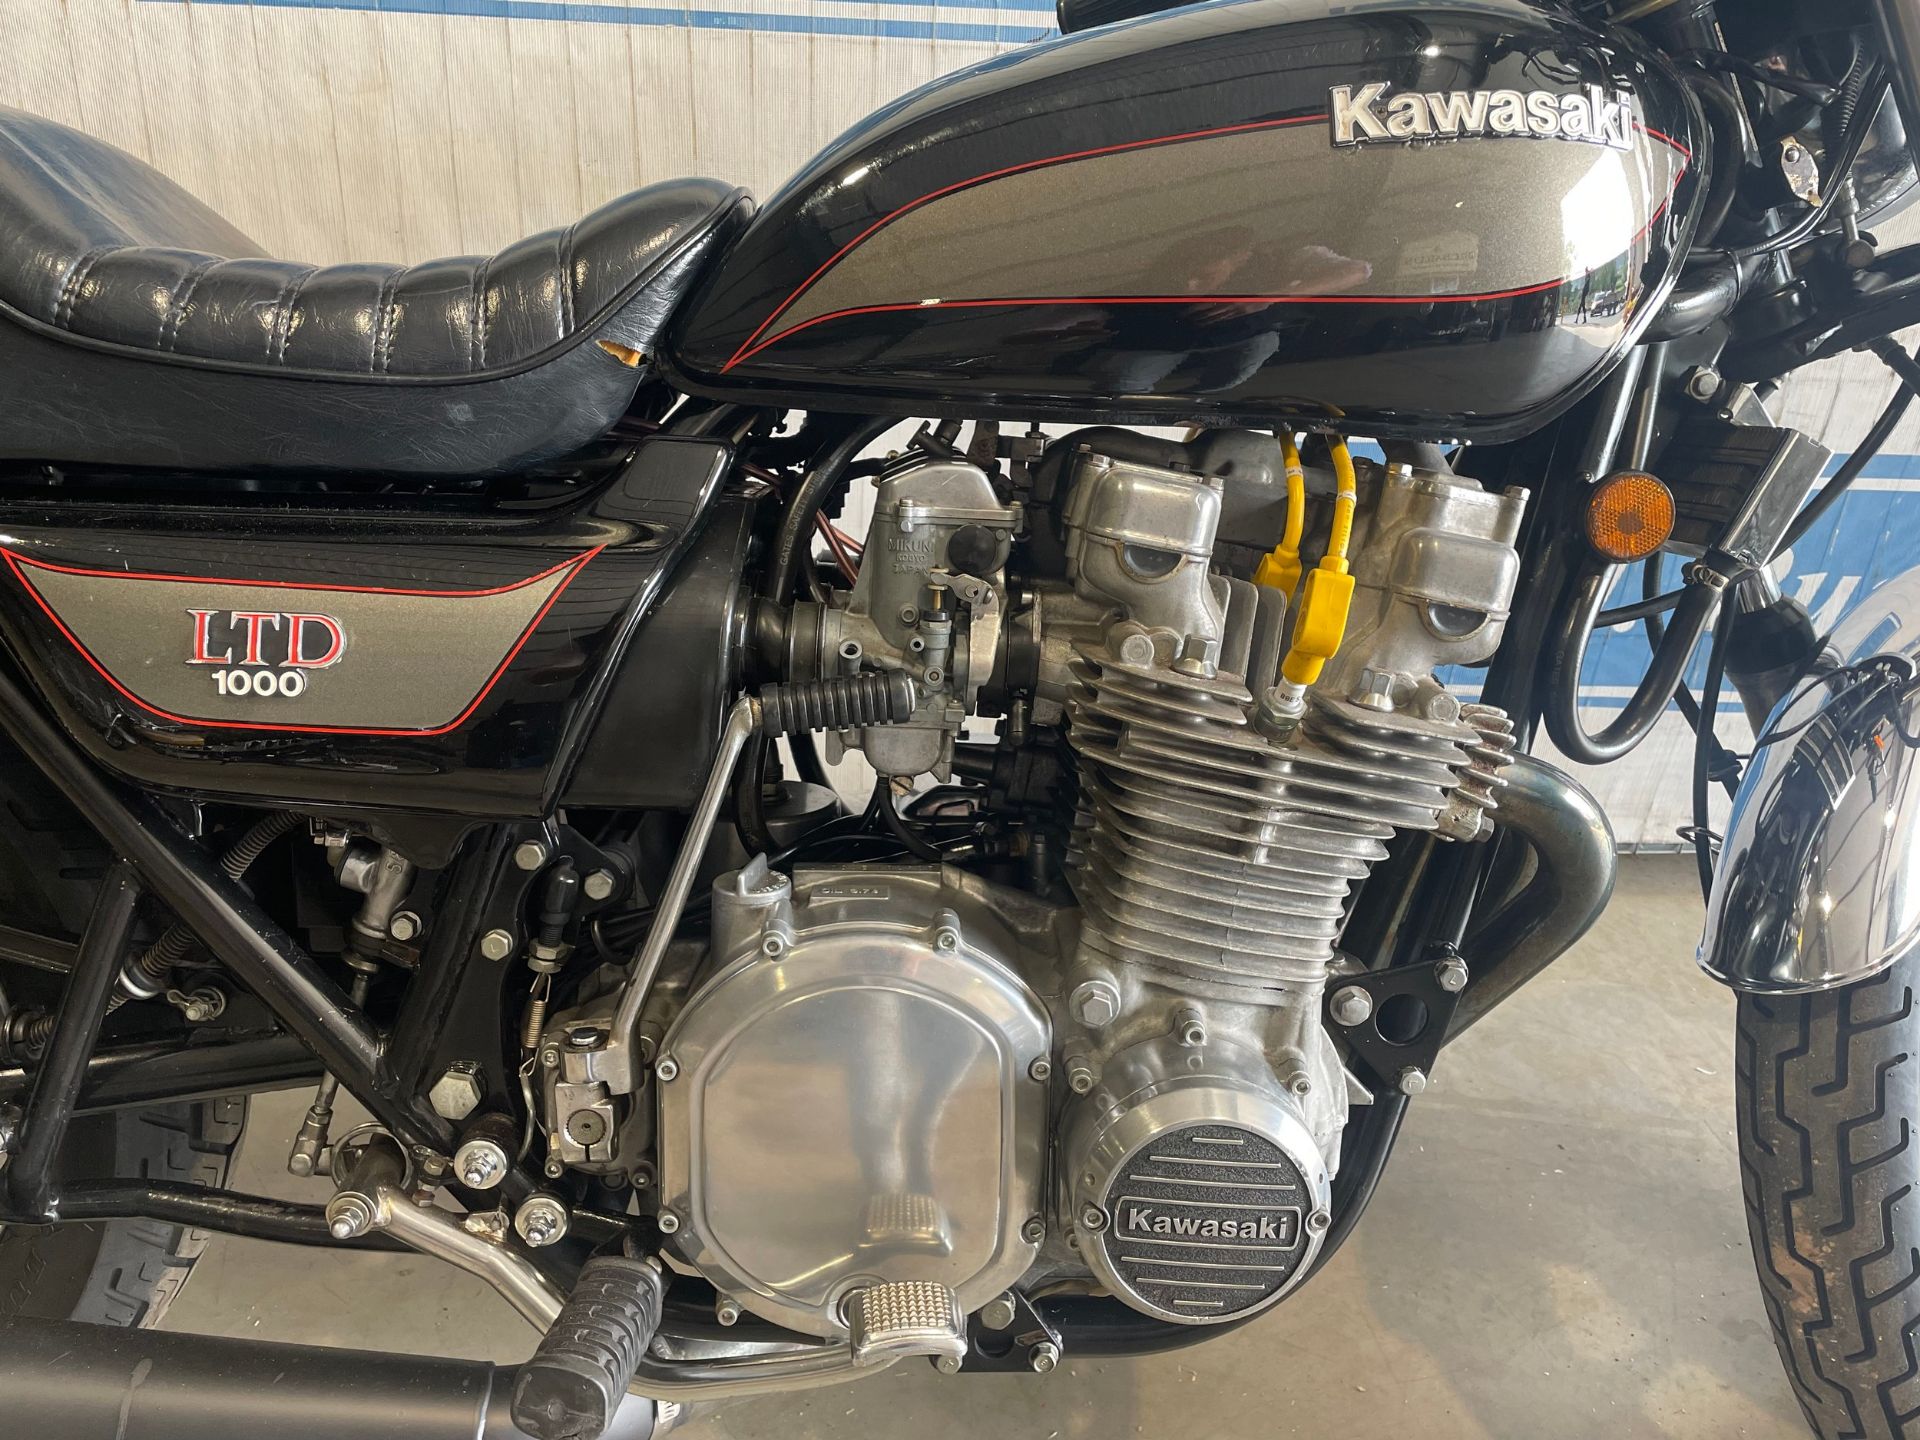 Kawasaki LTD 1000 motorcycle - Image 5 of 5